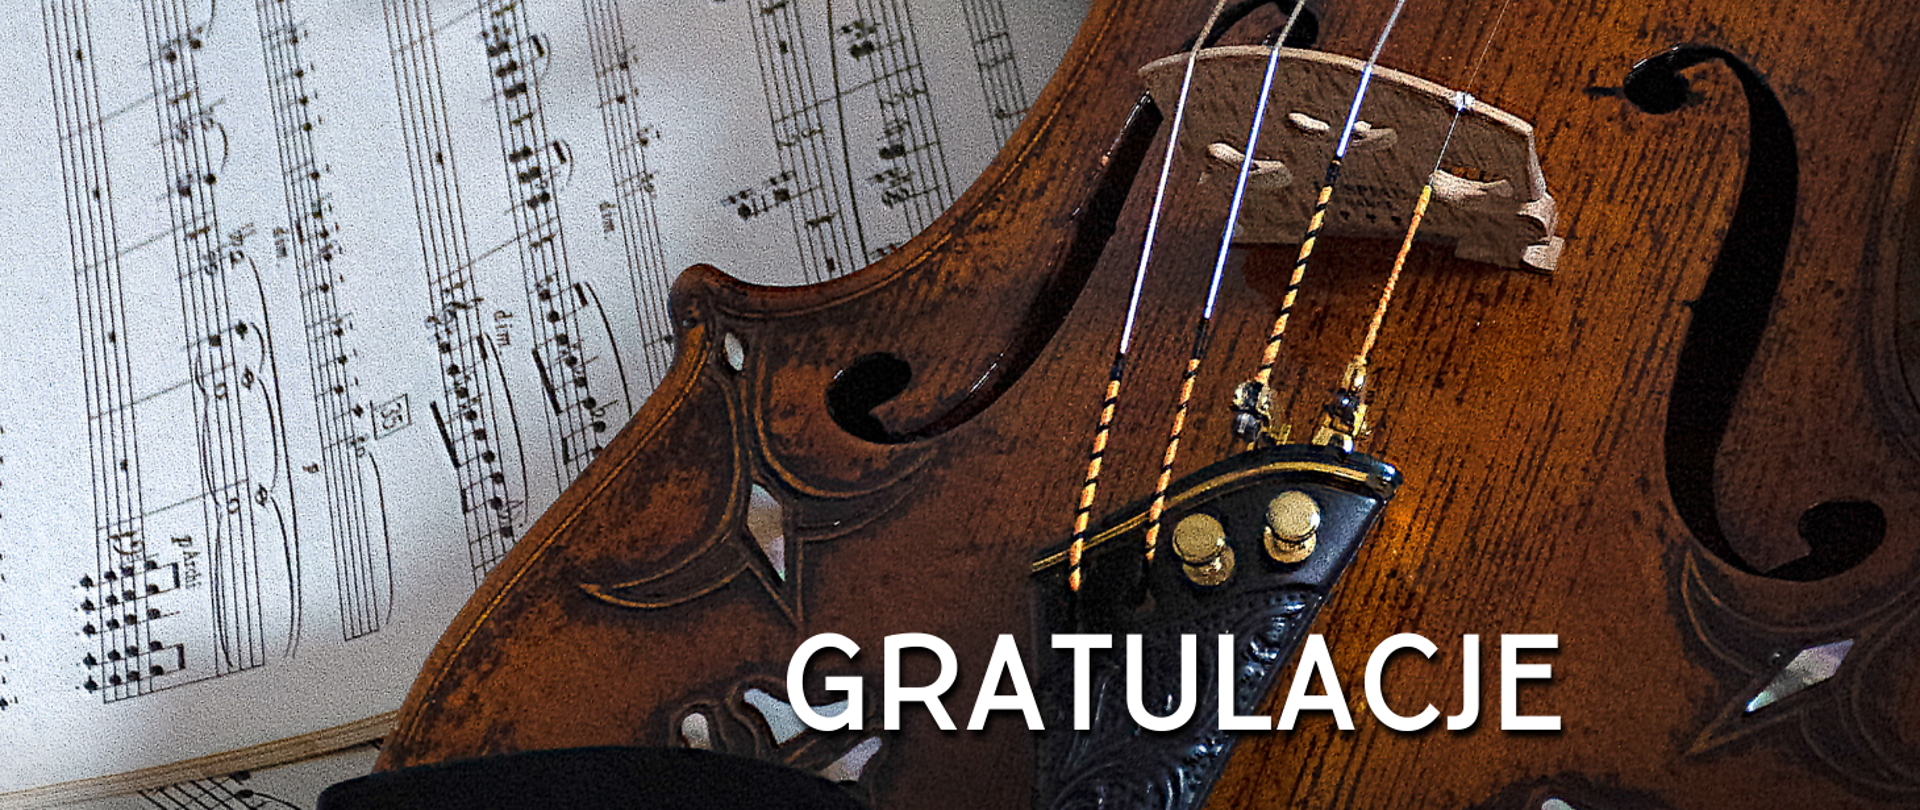 Na zdjęciu po lewej stronie kartka z nutami na pięciolinii, a po prawej stronie skrzypce. Na skrzypcach biały napis "gratulacje".